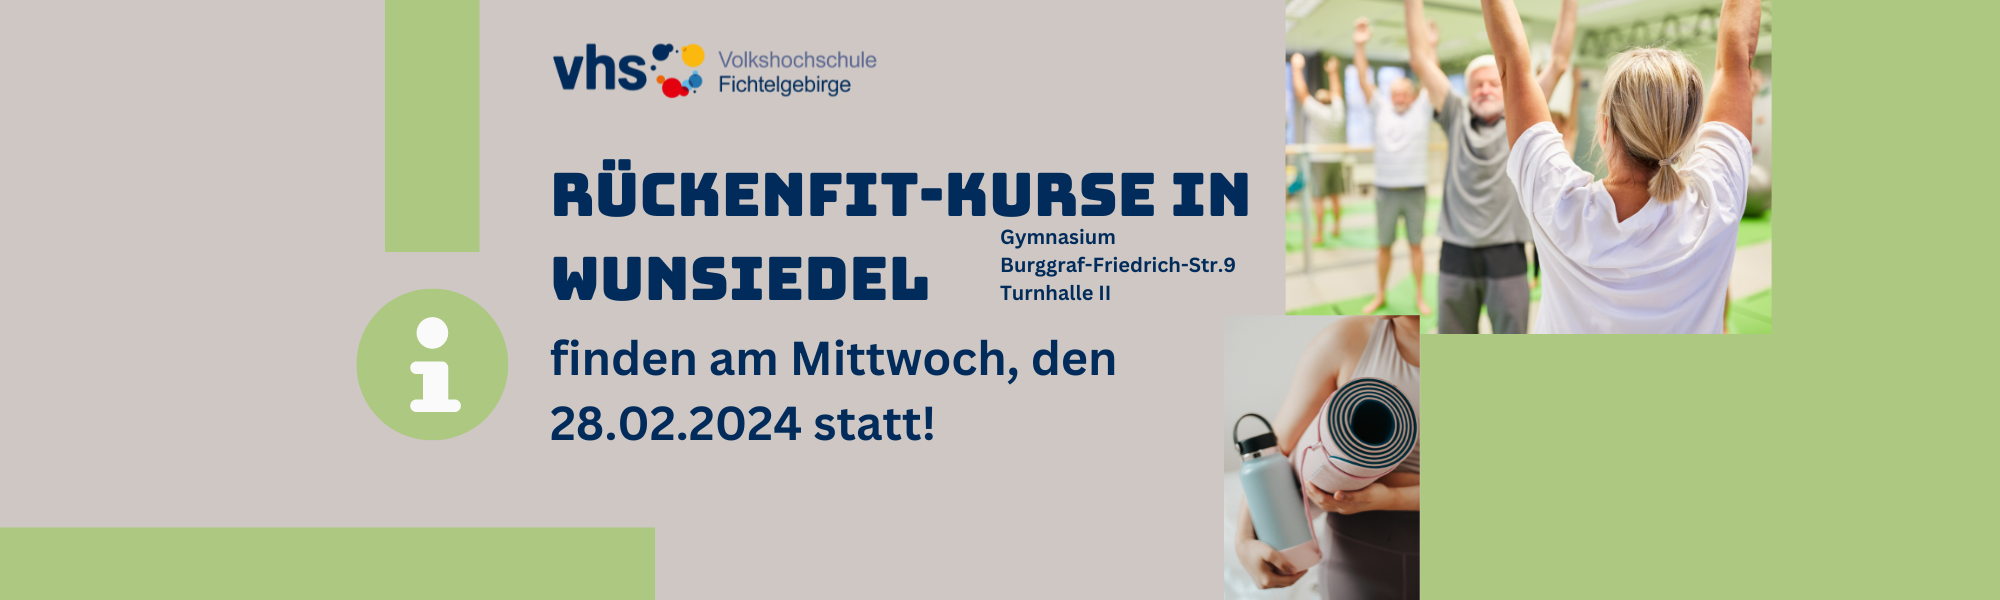 Die Rückenfit-Kurse in Wunsiedel finden am 28.02.2024 statt!